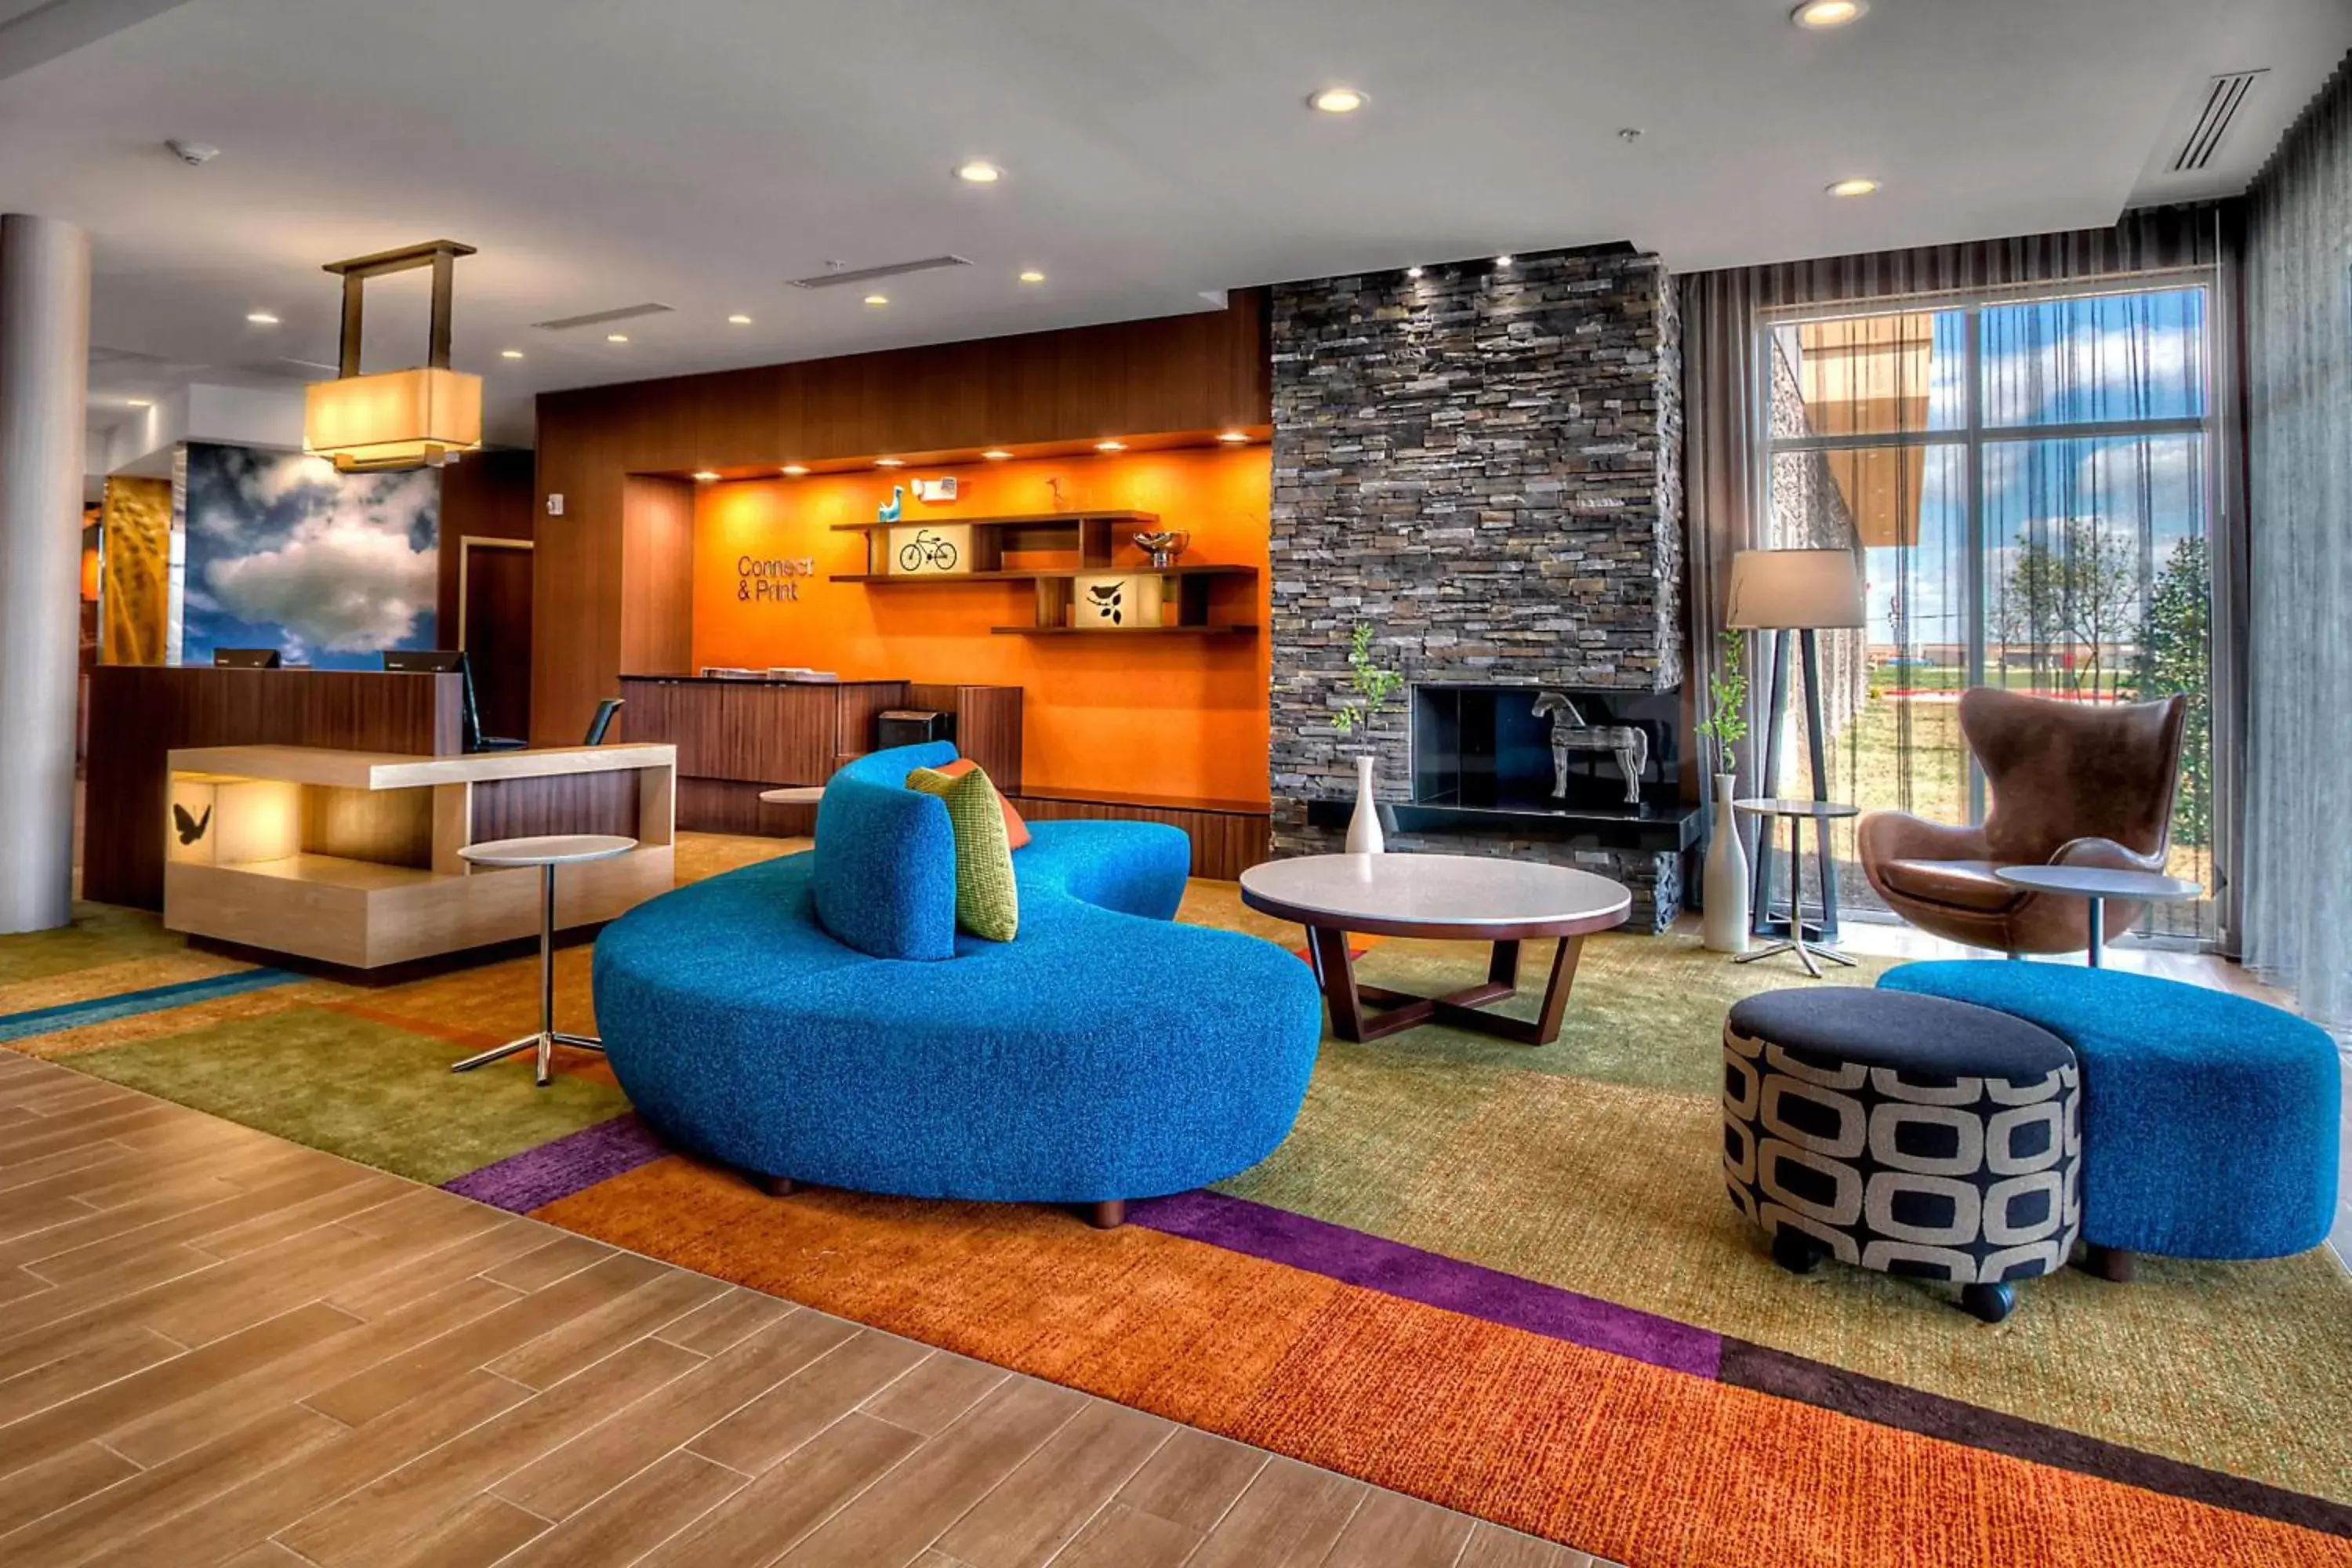 Lobby or reception, Lobby/Reception in Fairfield Inn and Suites Oklahoma City Yukon